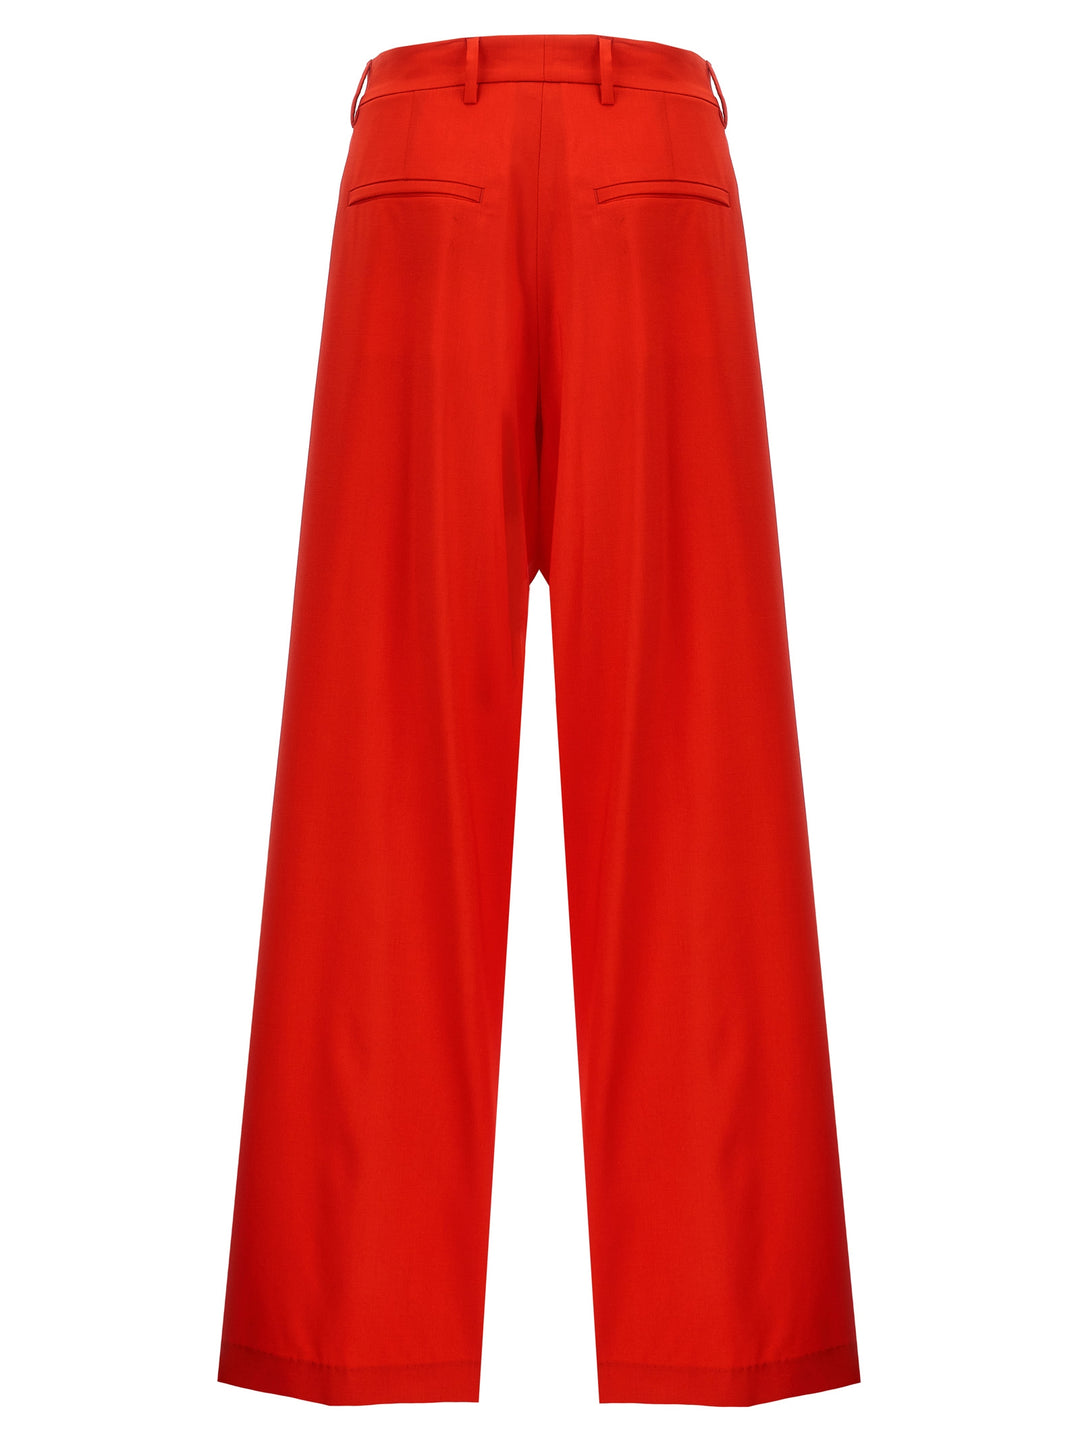 Wool Pantaloni Rosso